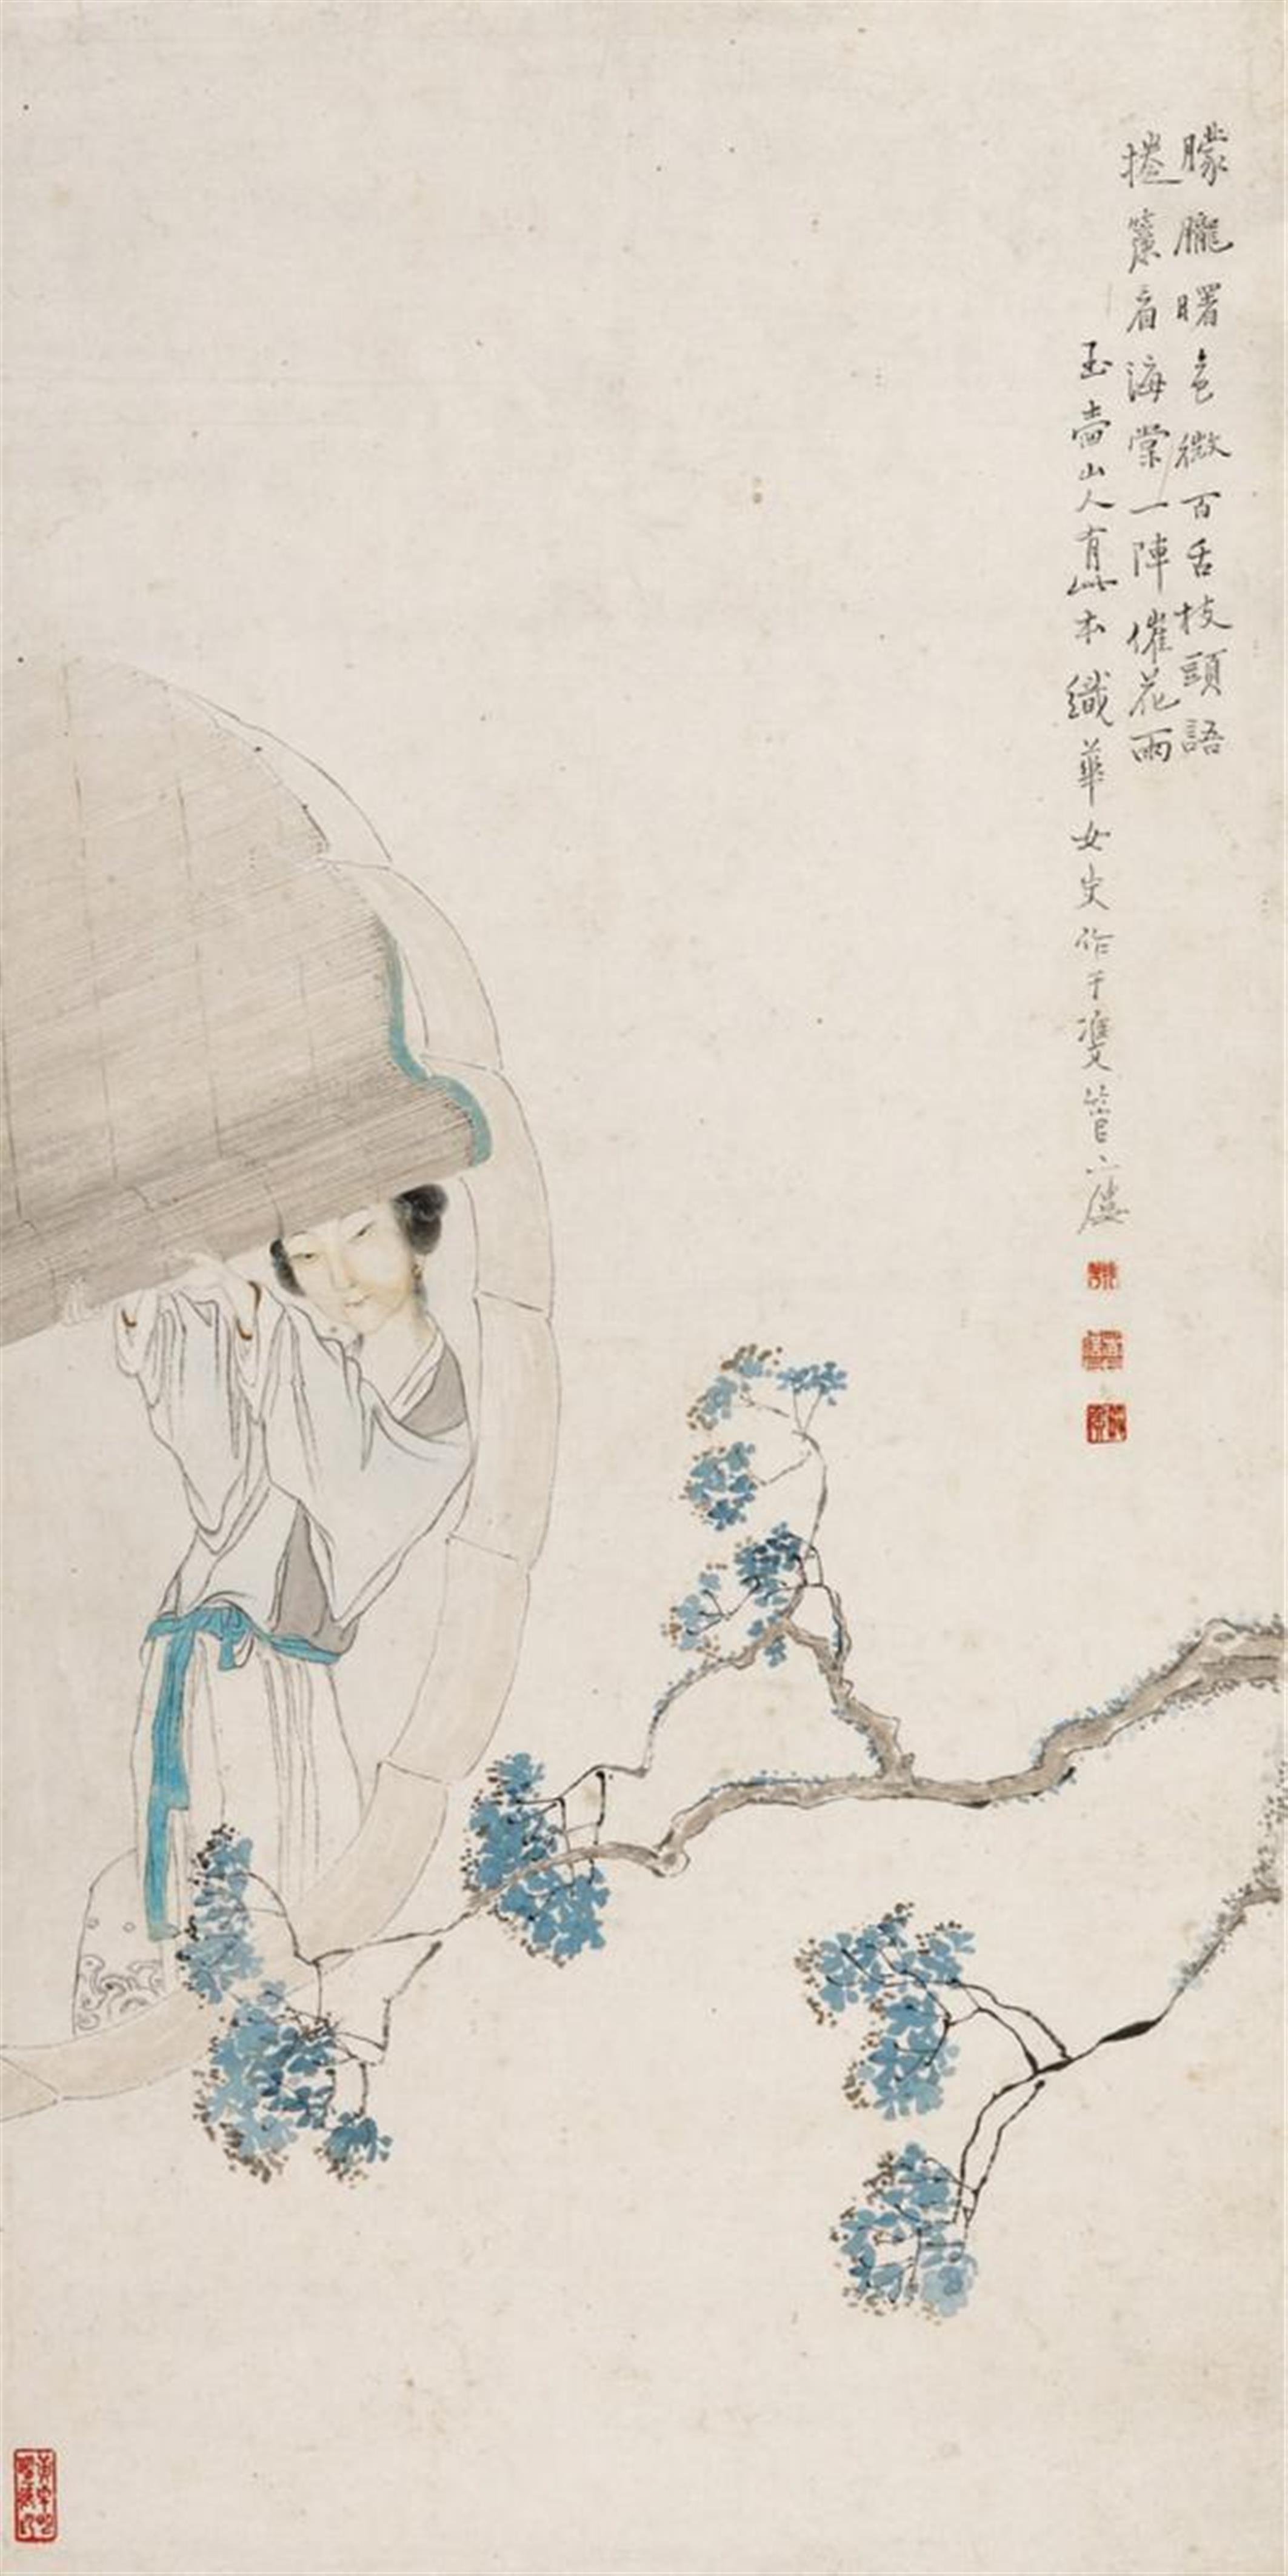 Shi Hua, Um 1900 - Junge Frau an einem Rundfenster auf Blütenzweig blickend. Tusche und wenige Farben auf Papier. Aufschrift, sign.: Shi Hua nüshi, Siegel: Shi Hua und drei weitere. - image-1